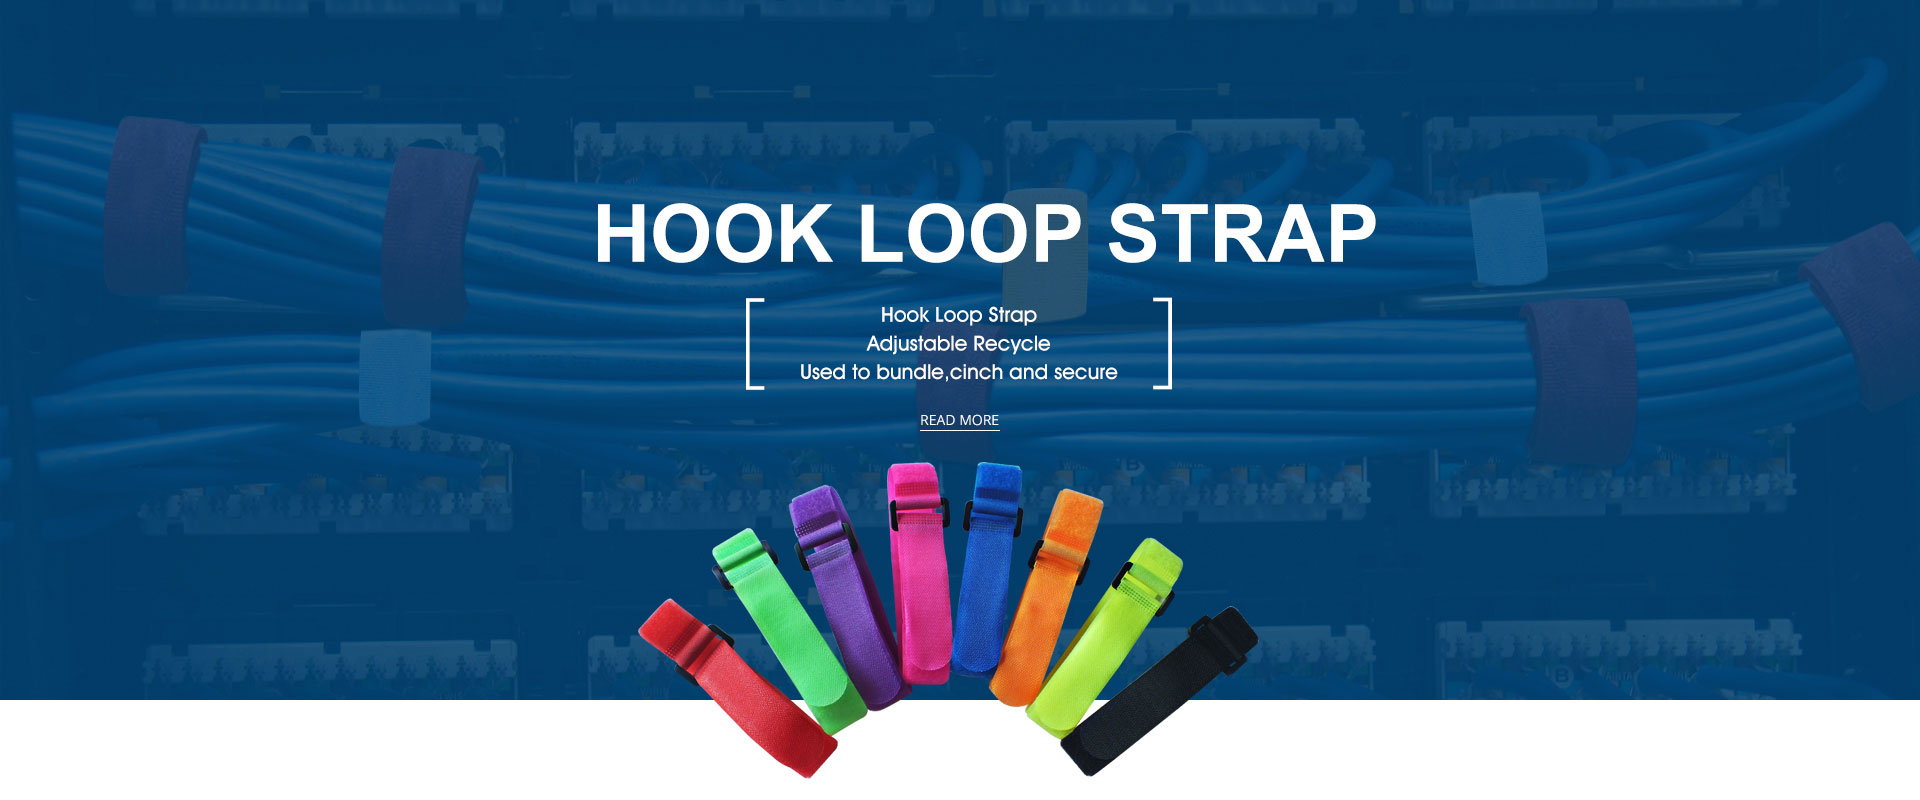 Hook loop straps